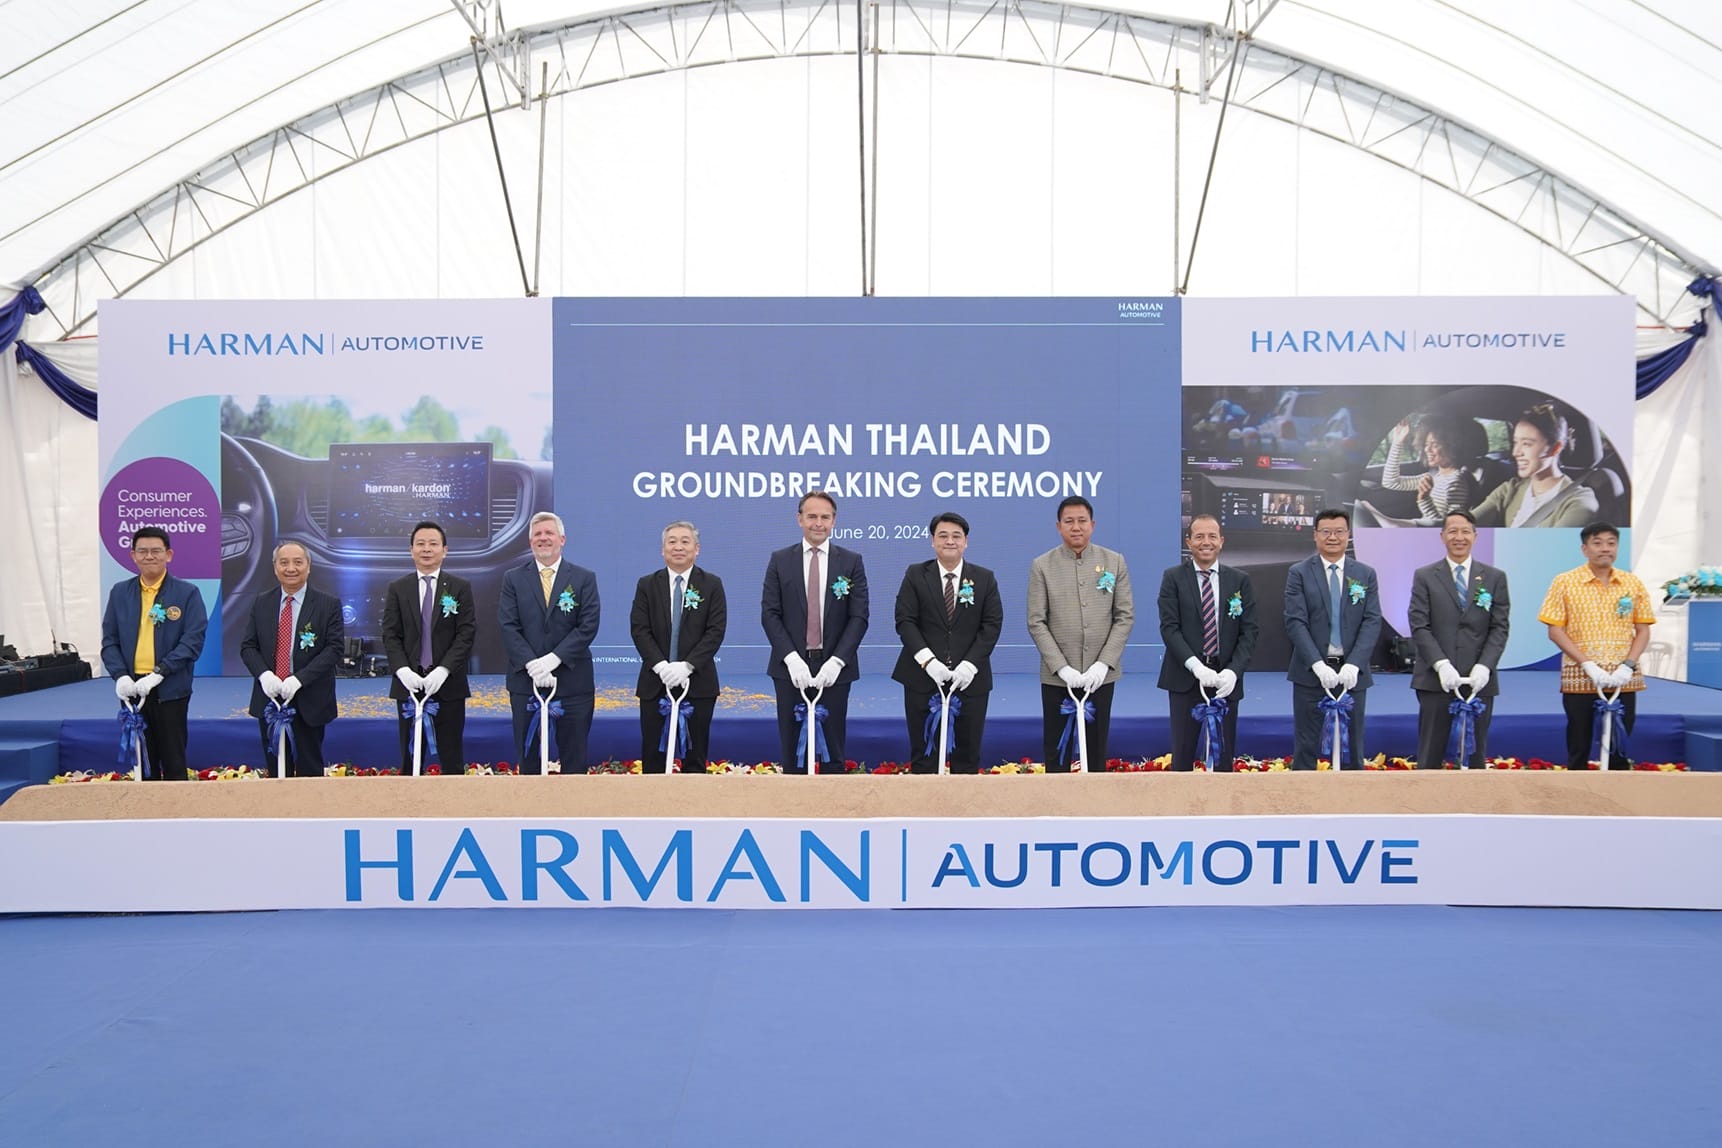 HARMAN ประกาศครั้งสำคัญเตรียมเปิดโรงงานผลิตแห่งใหม่ในประเทศไทย 3